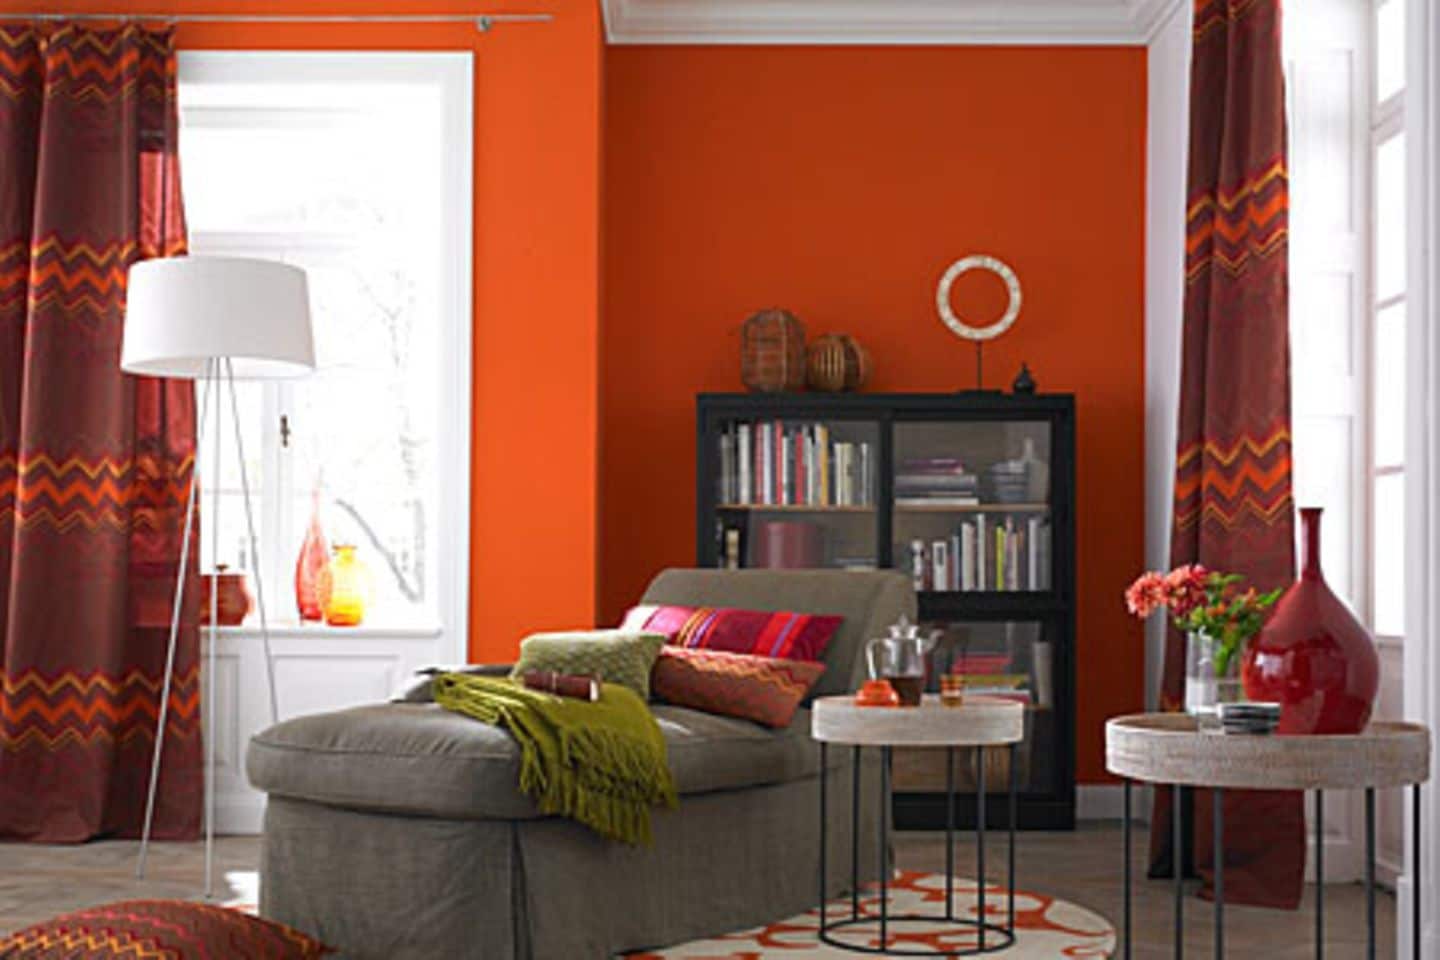 ▷ Farbige Wand in leuchtendem Orange